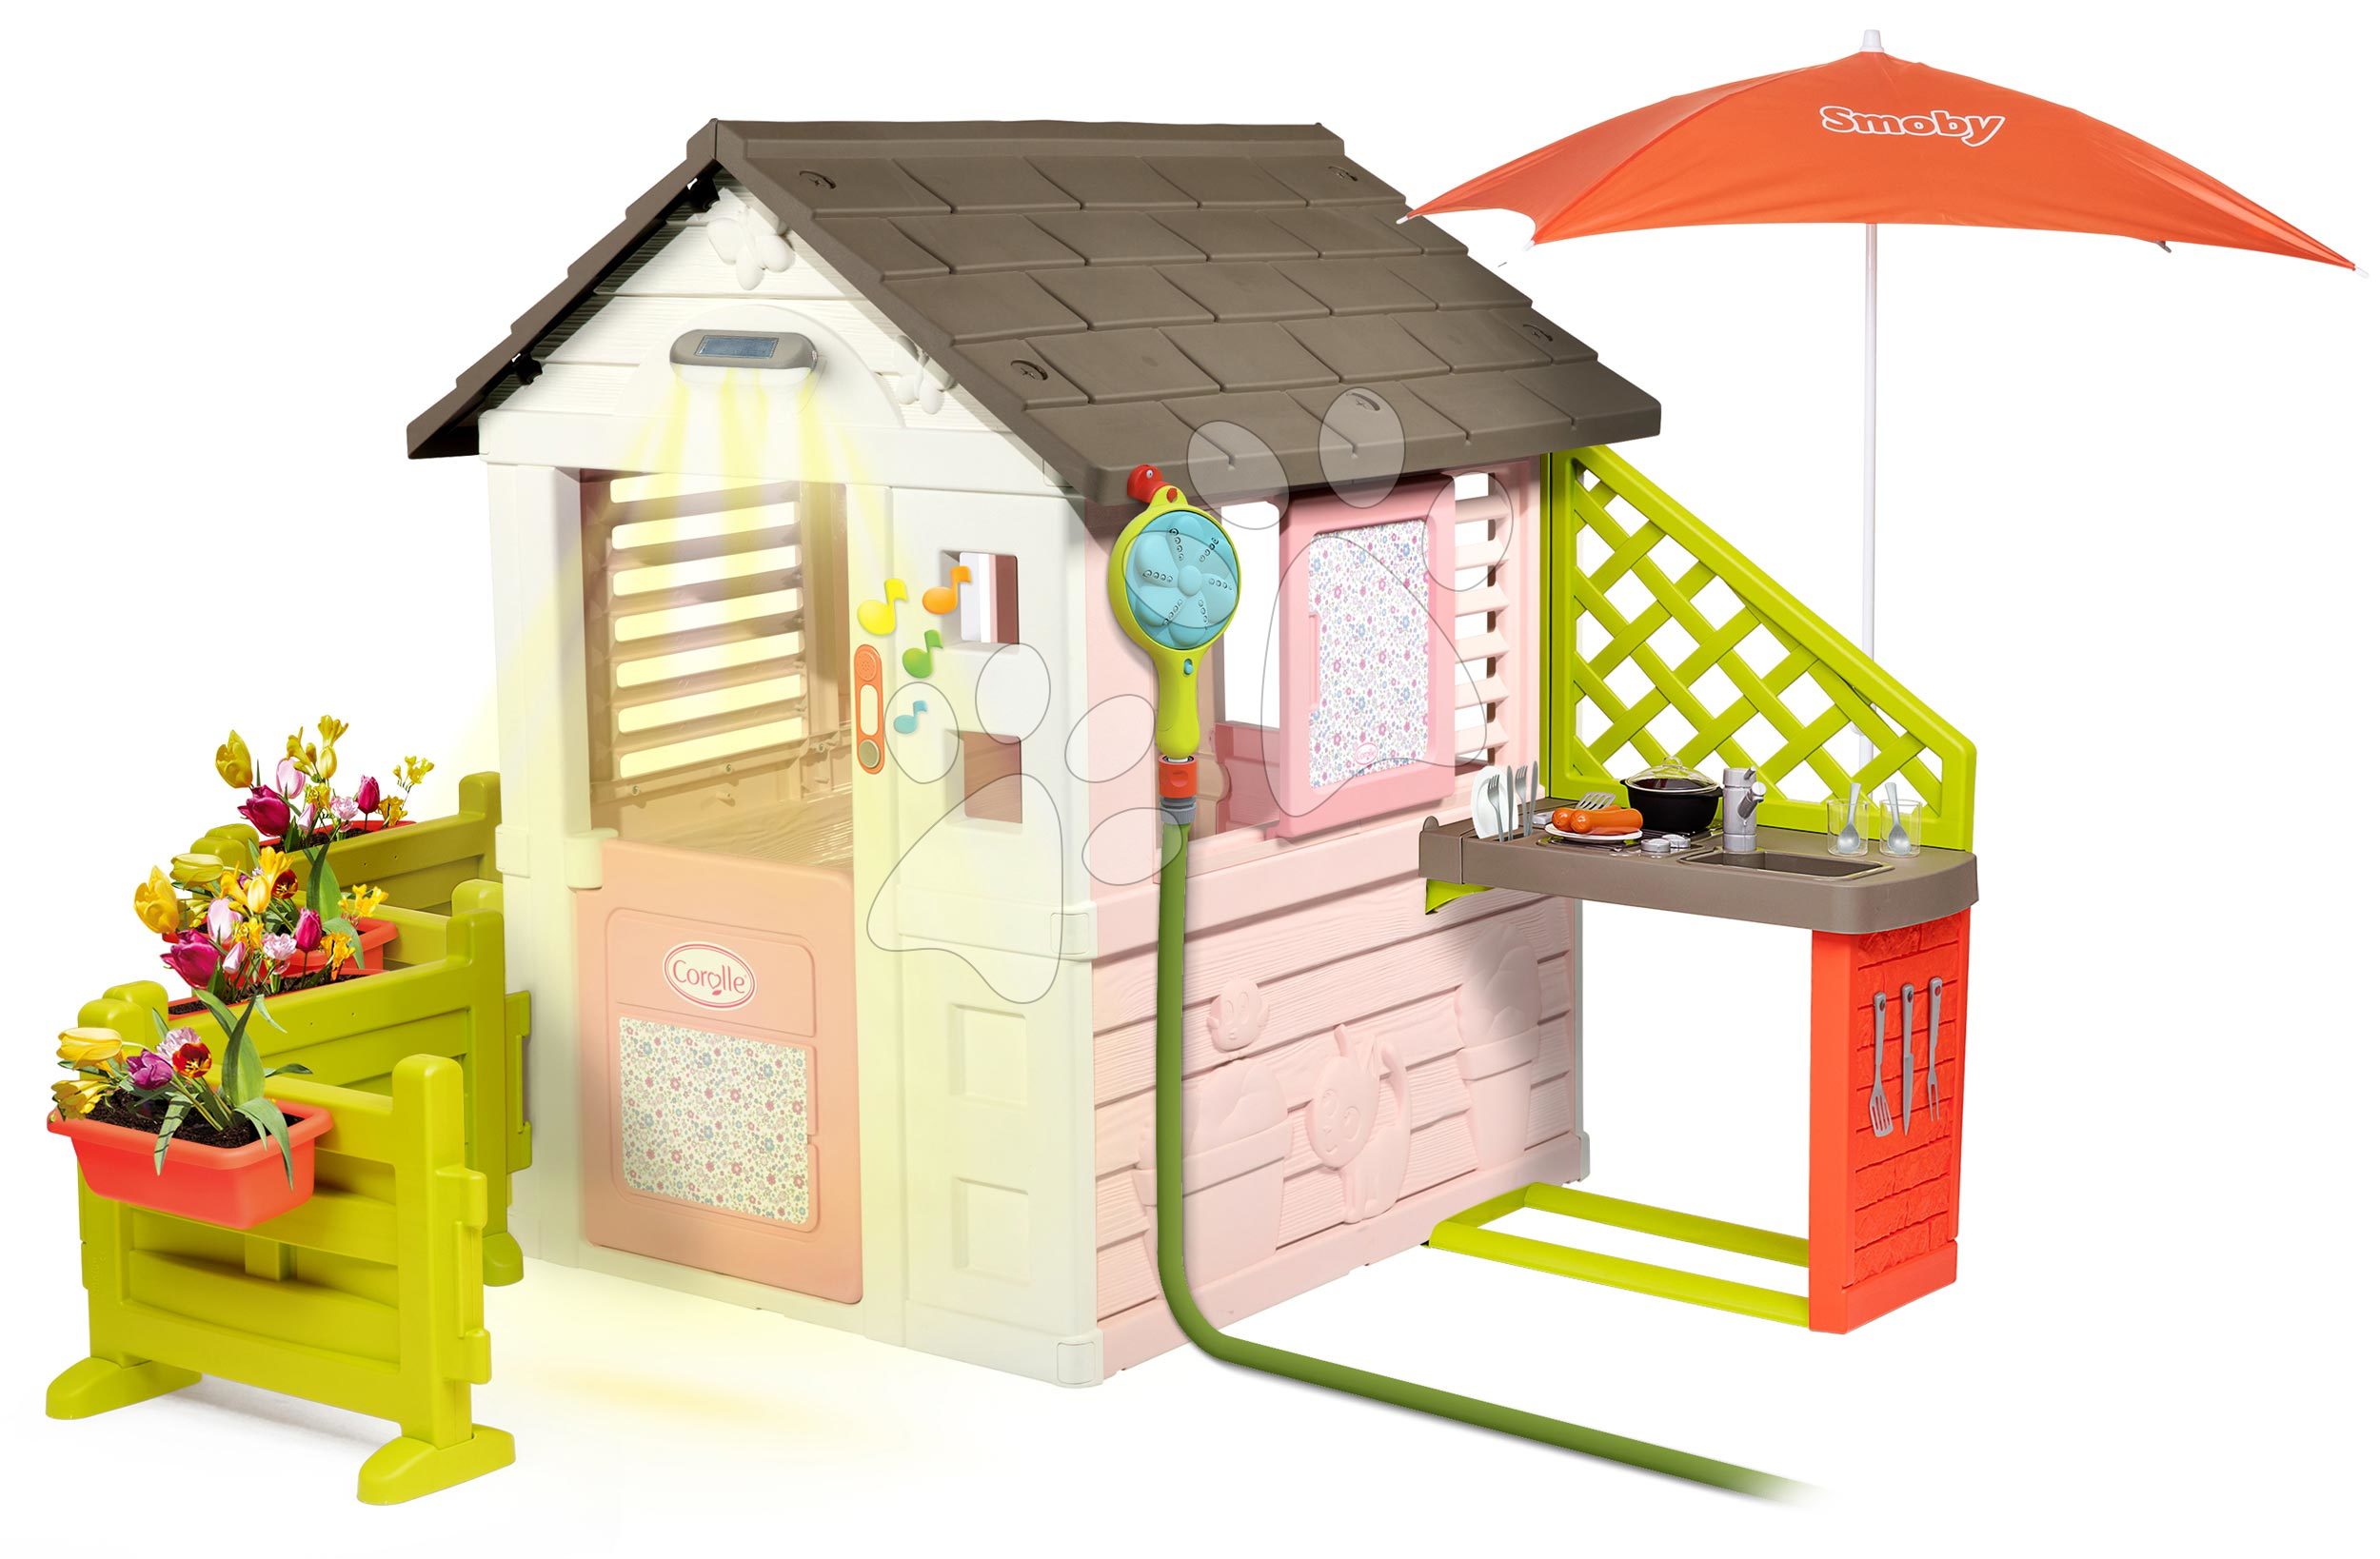 Domček Corolle Playhouse Smoby na záhradke so sprchou a kuchynka pod slnečníkom